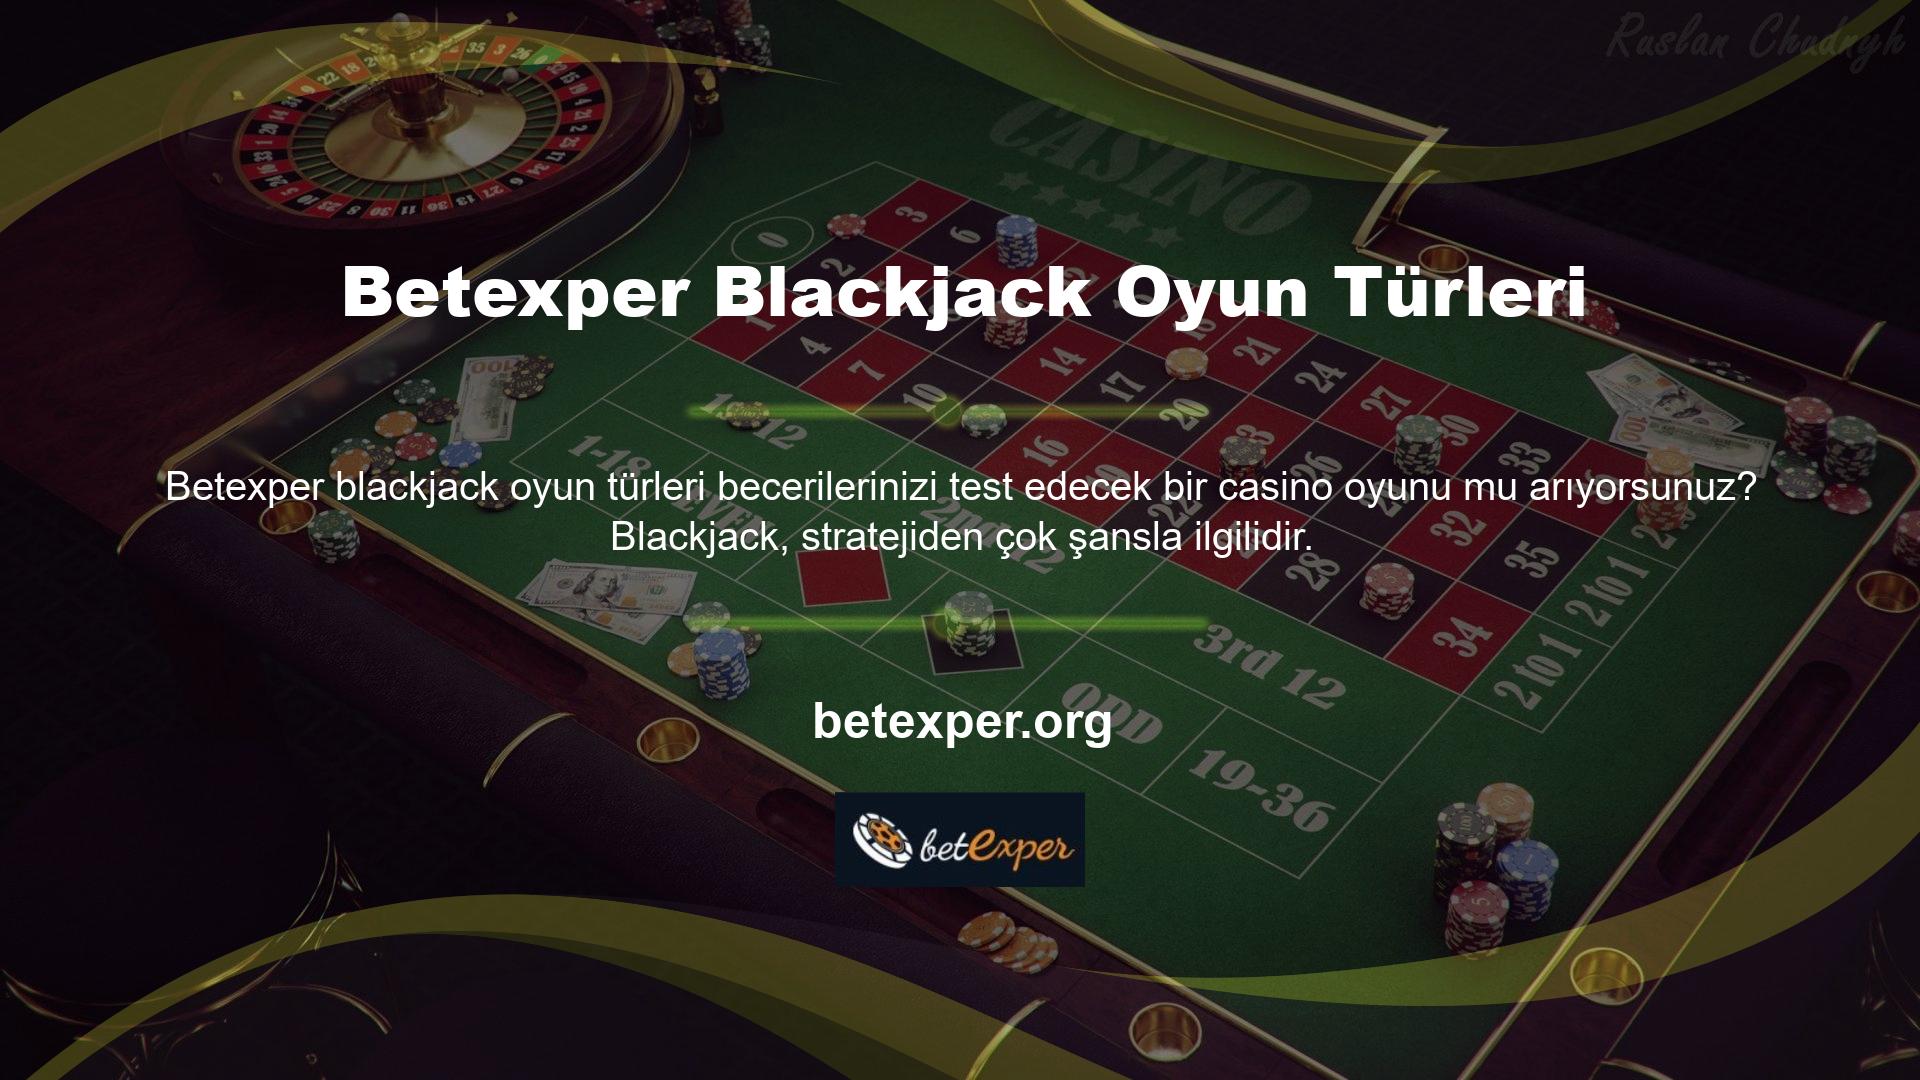 Bu, oynadığınız blackjack çeşidi için en iyi stratejiyi kullanırsanız büyük kazanabileceğiniz anlamına gelir